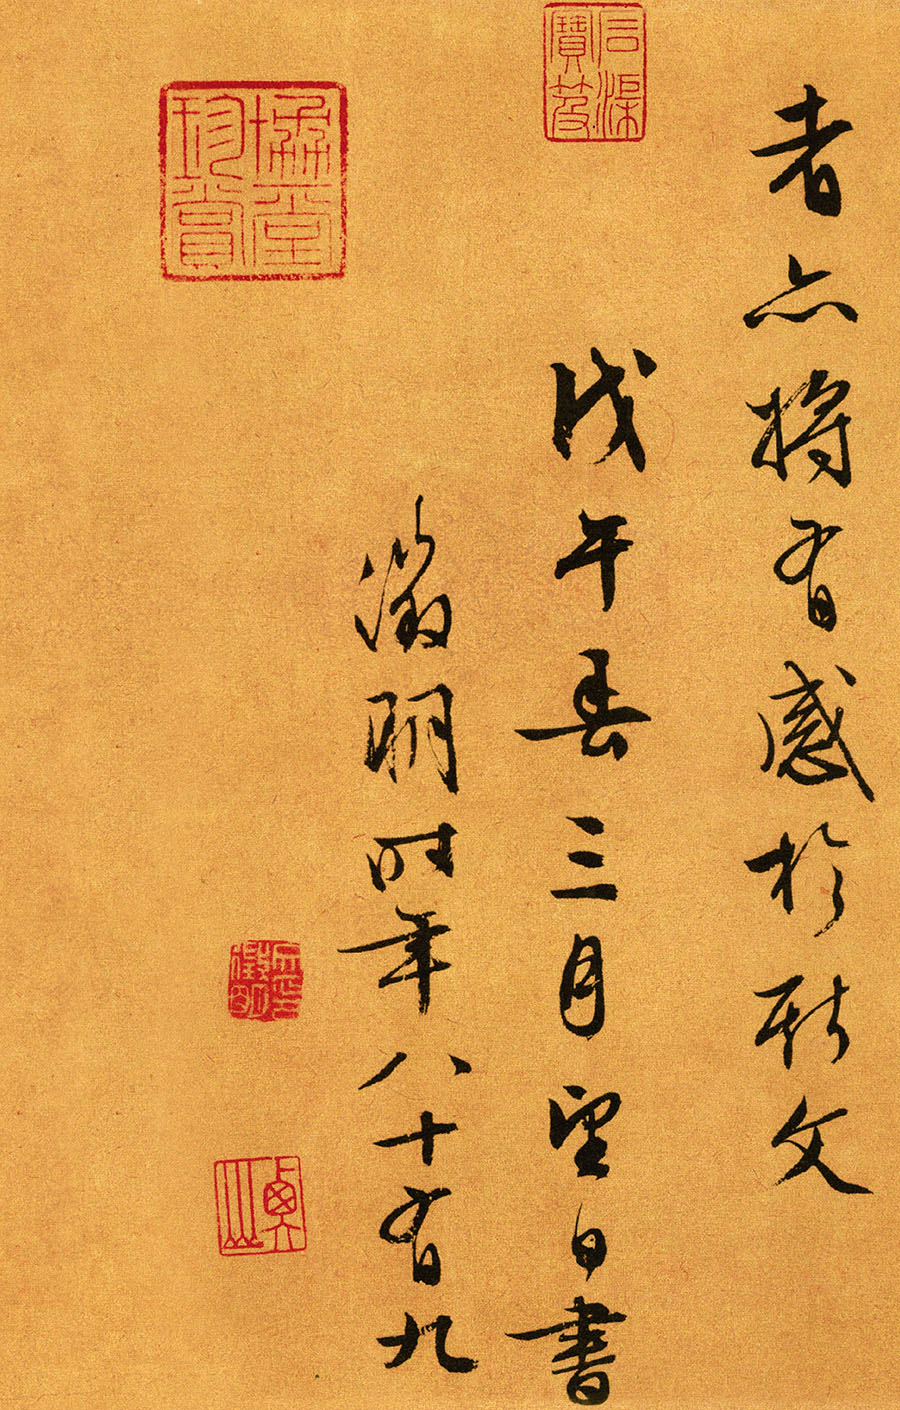 文徵明《行草书兰亭序》-台北故宫博物院藏(图8)